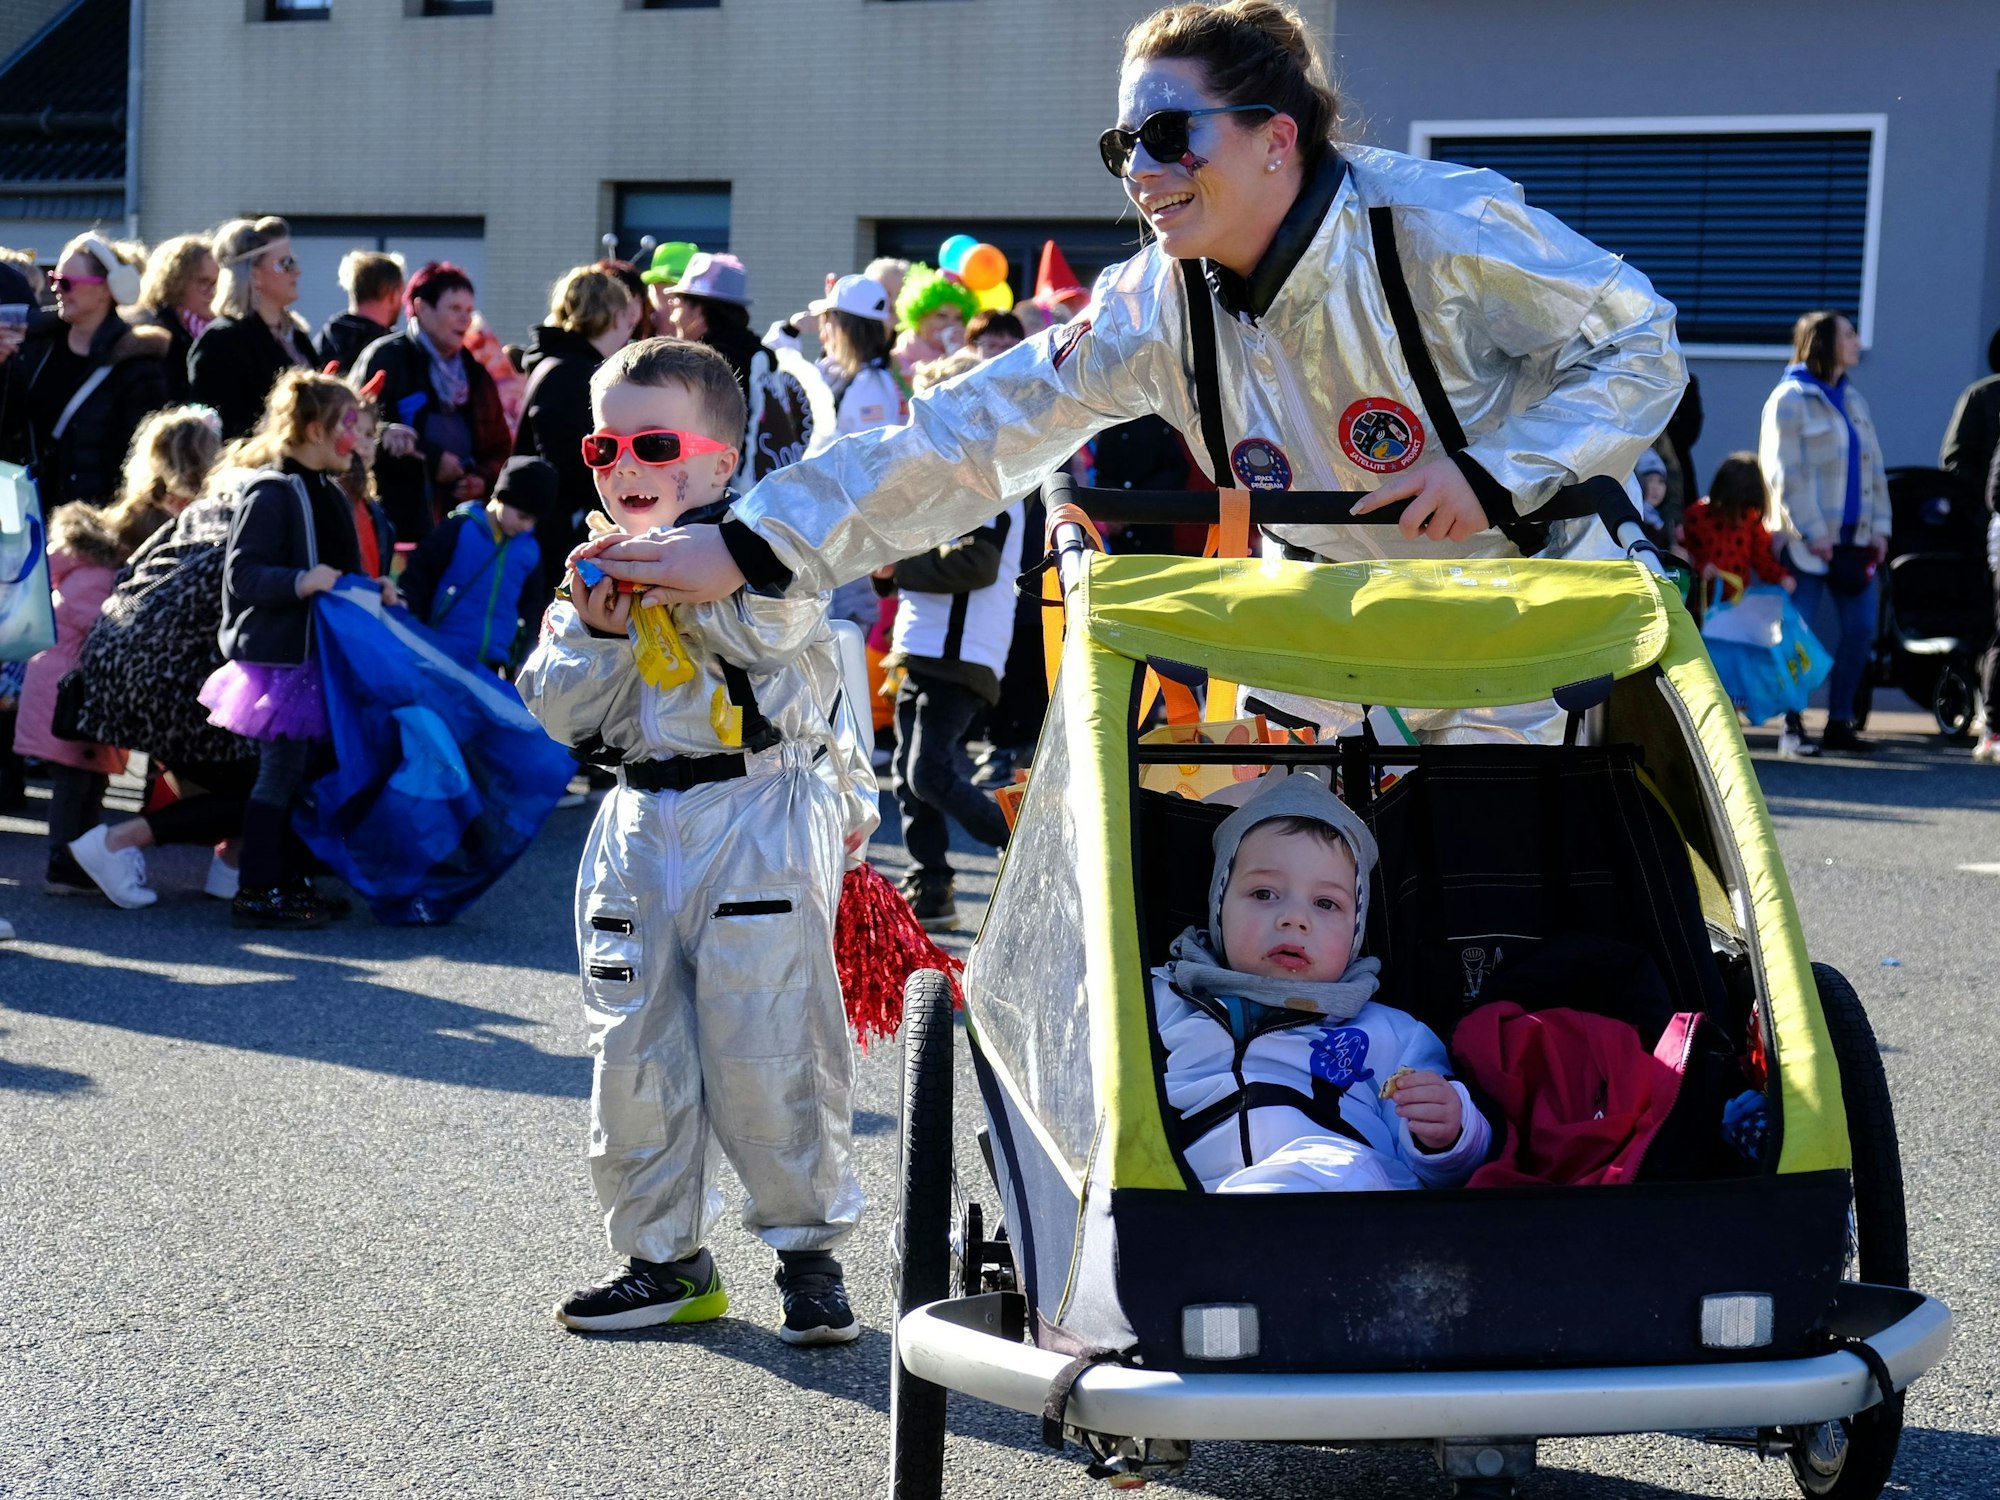 Die Gäste von der IG Rinnener Karneval starteteen diesmal als Astronauten bis in den Weltraum durch.